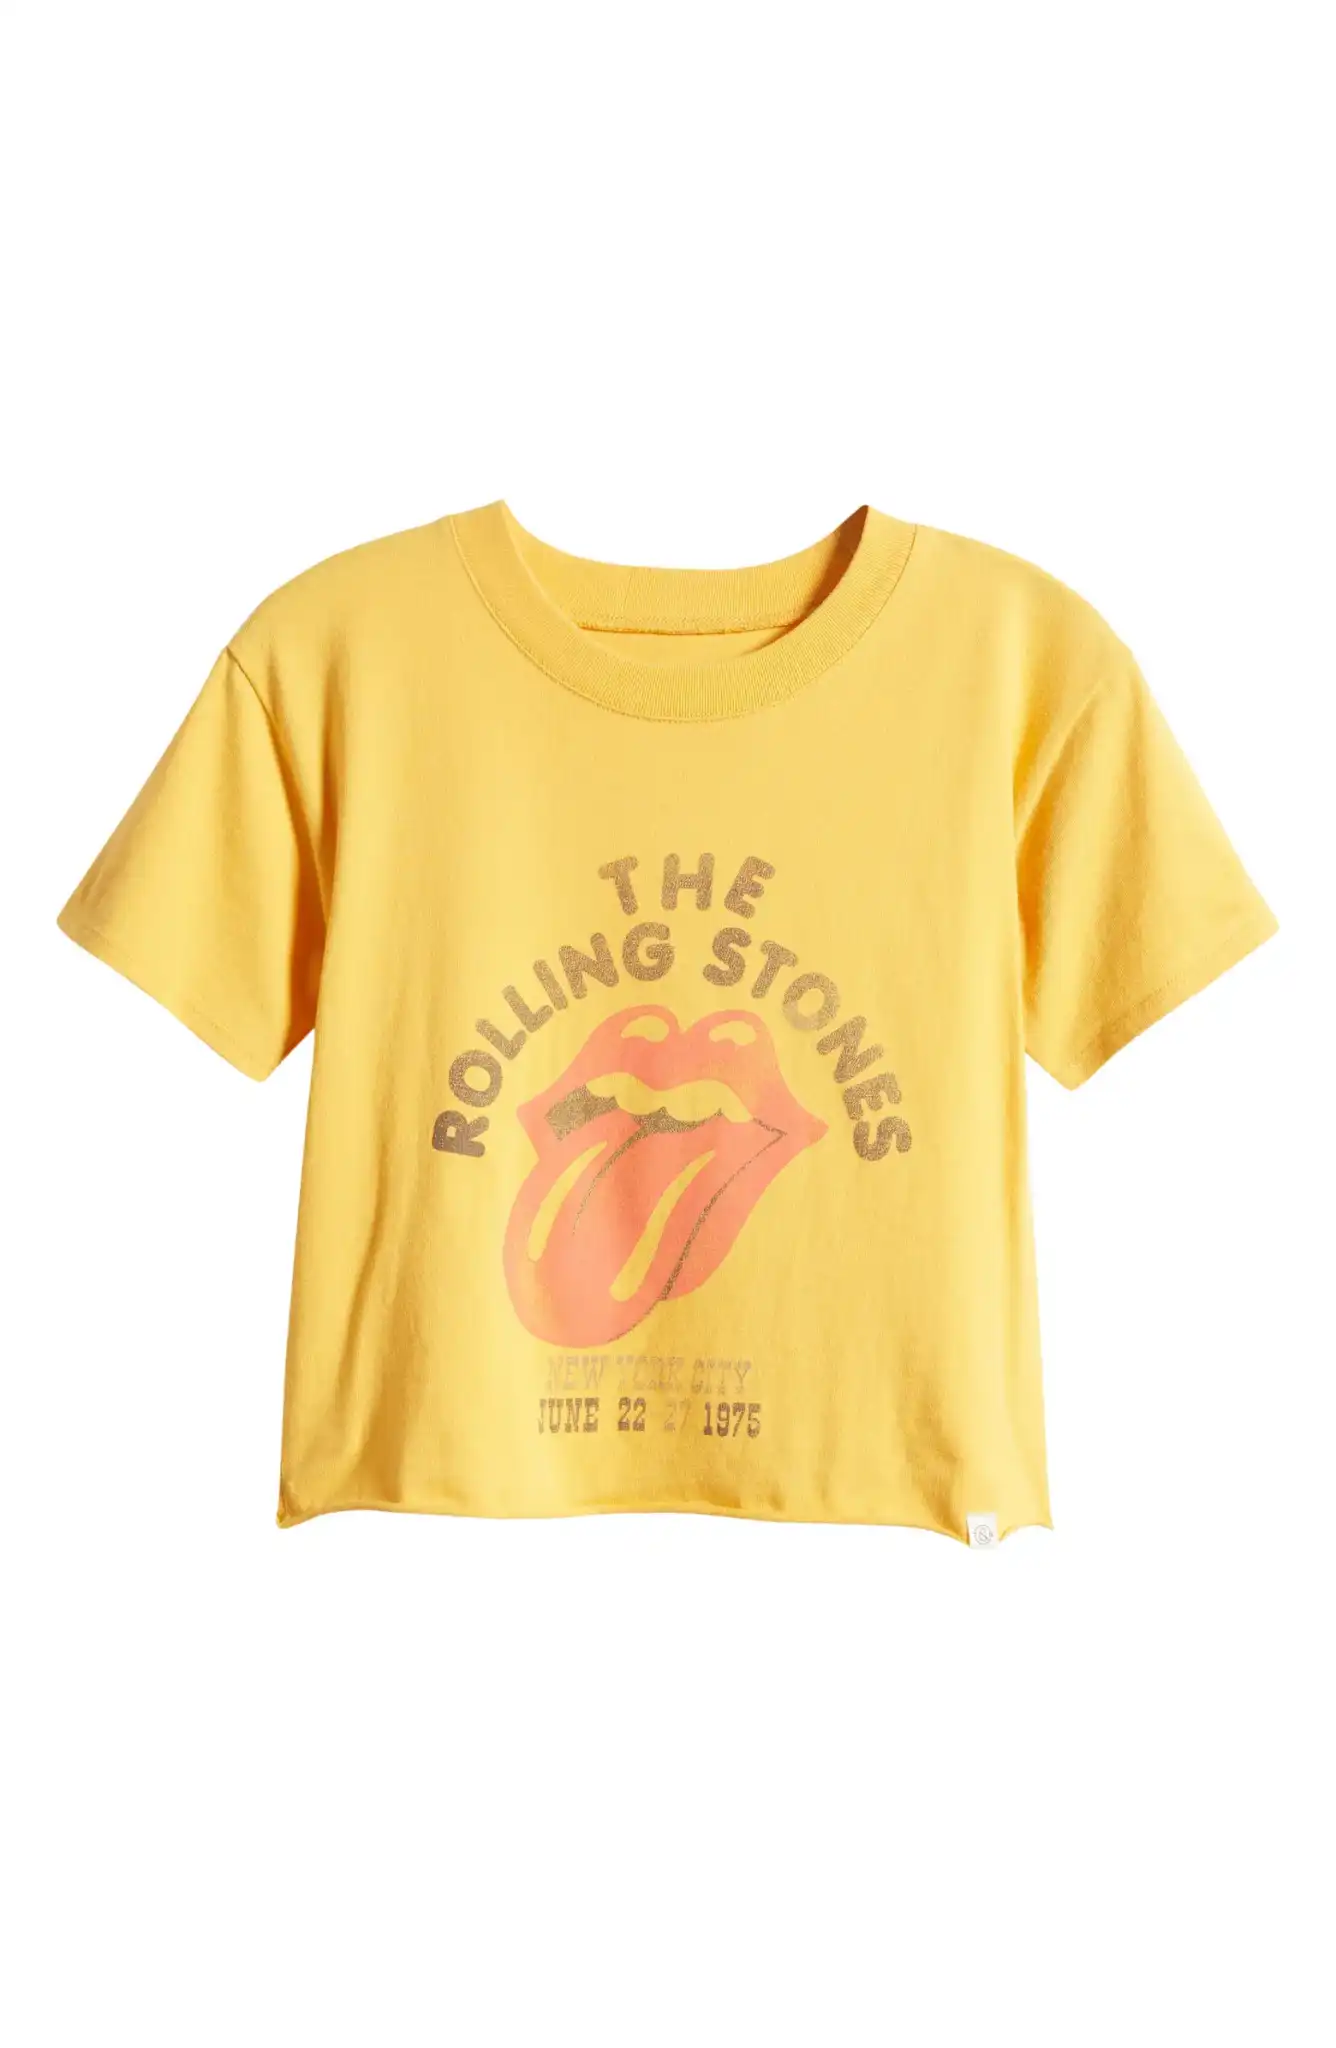 Kids' Boxy Raw Hem Rolling Stone Graphic T-Shirt